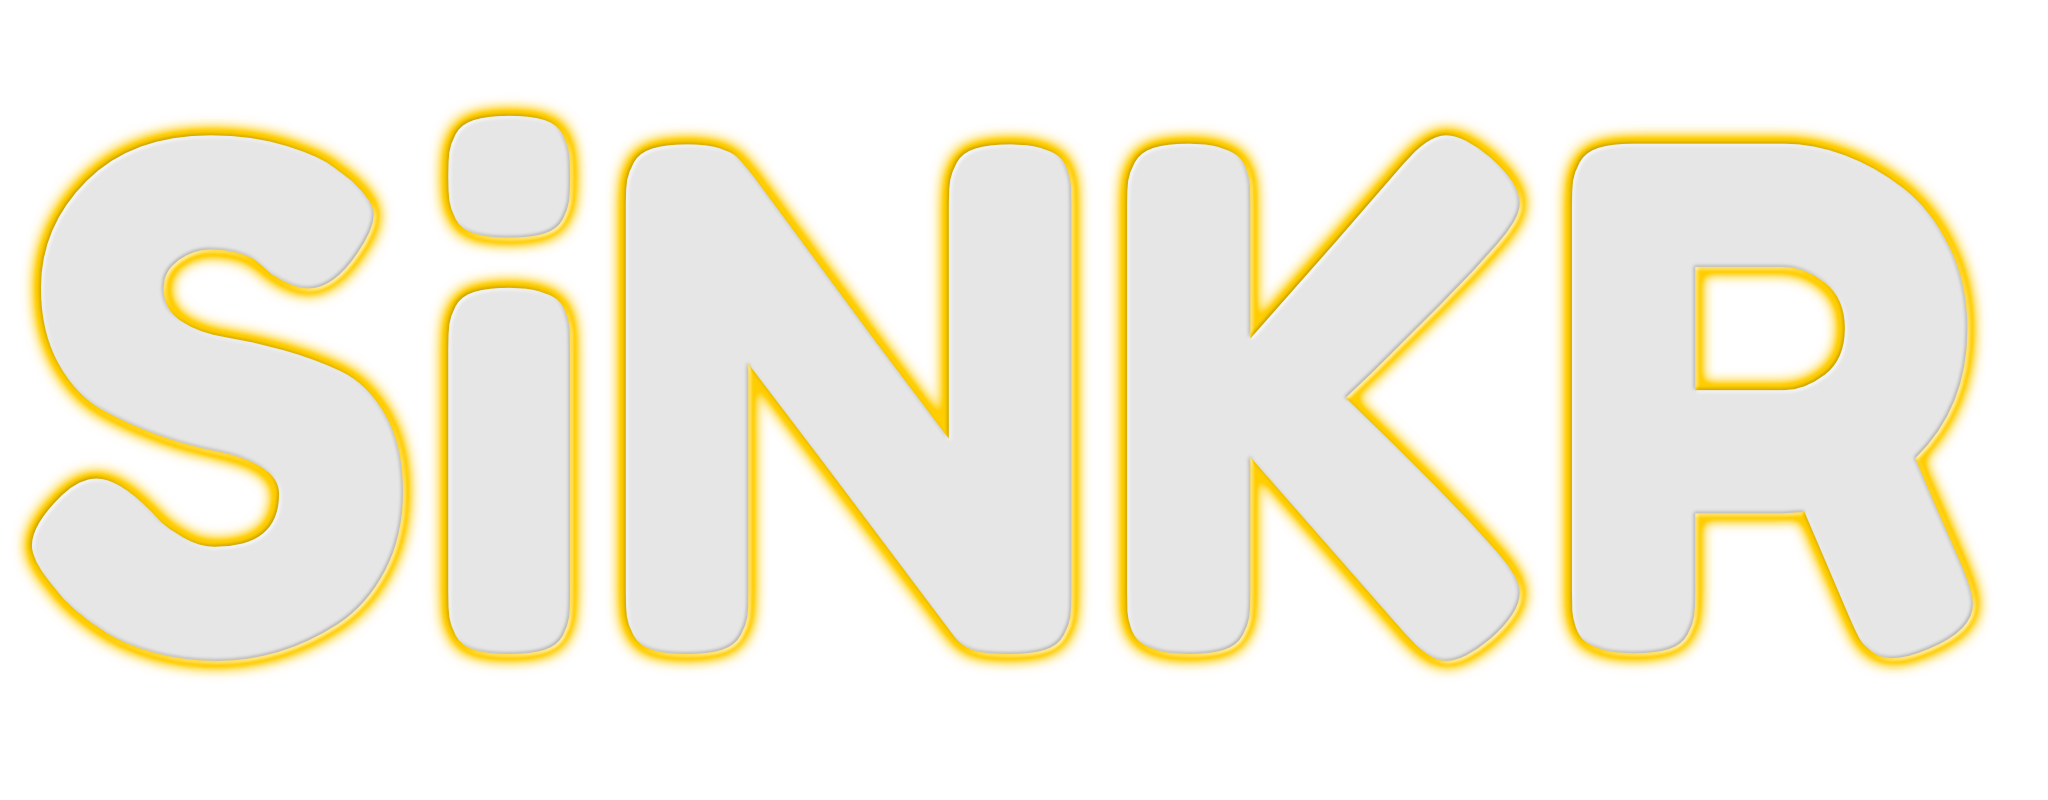 SiNKR Banner